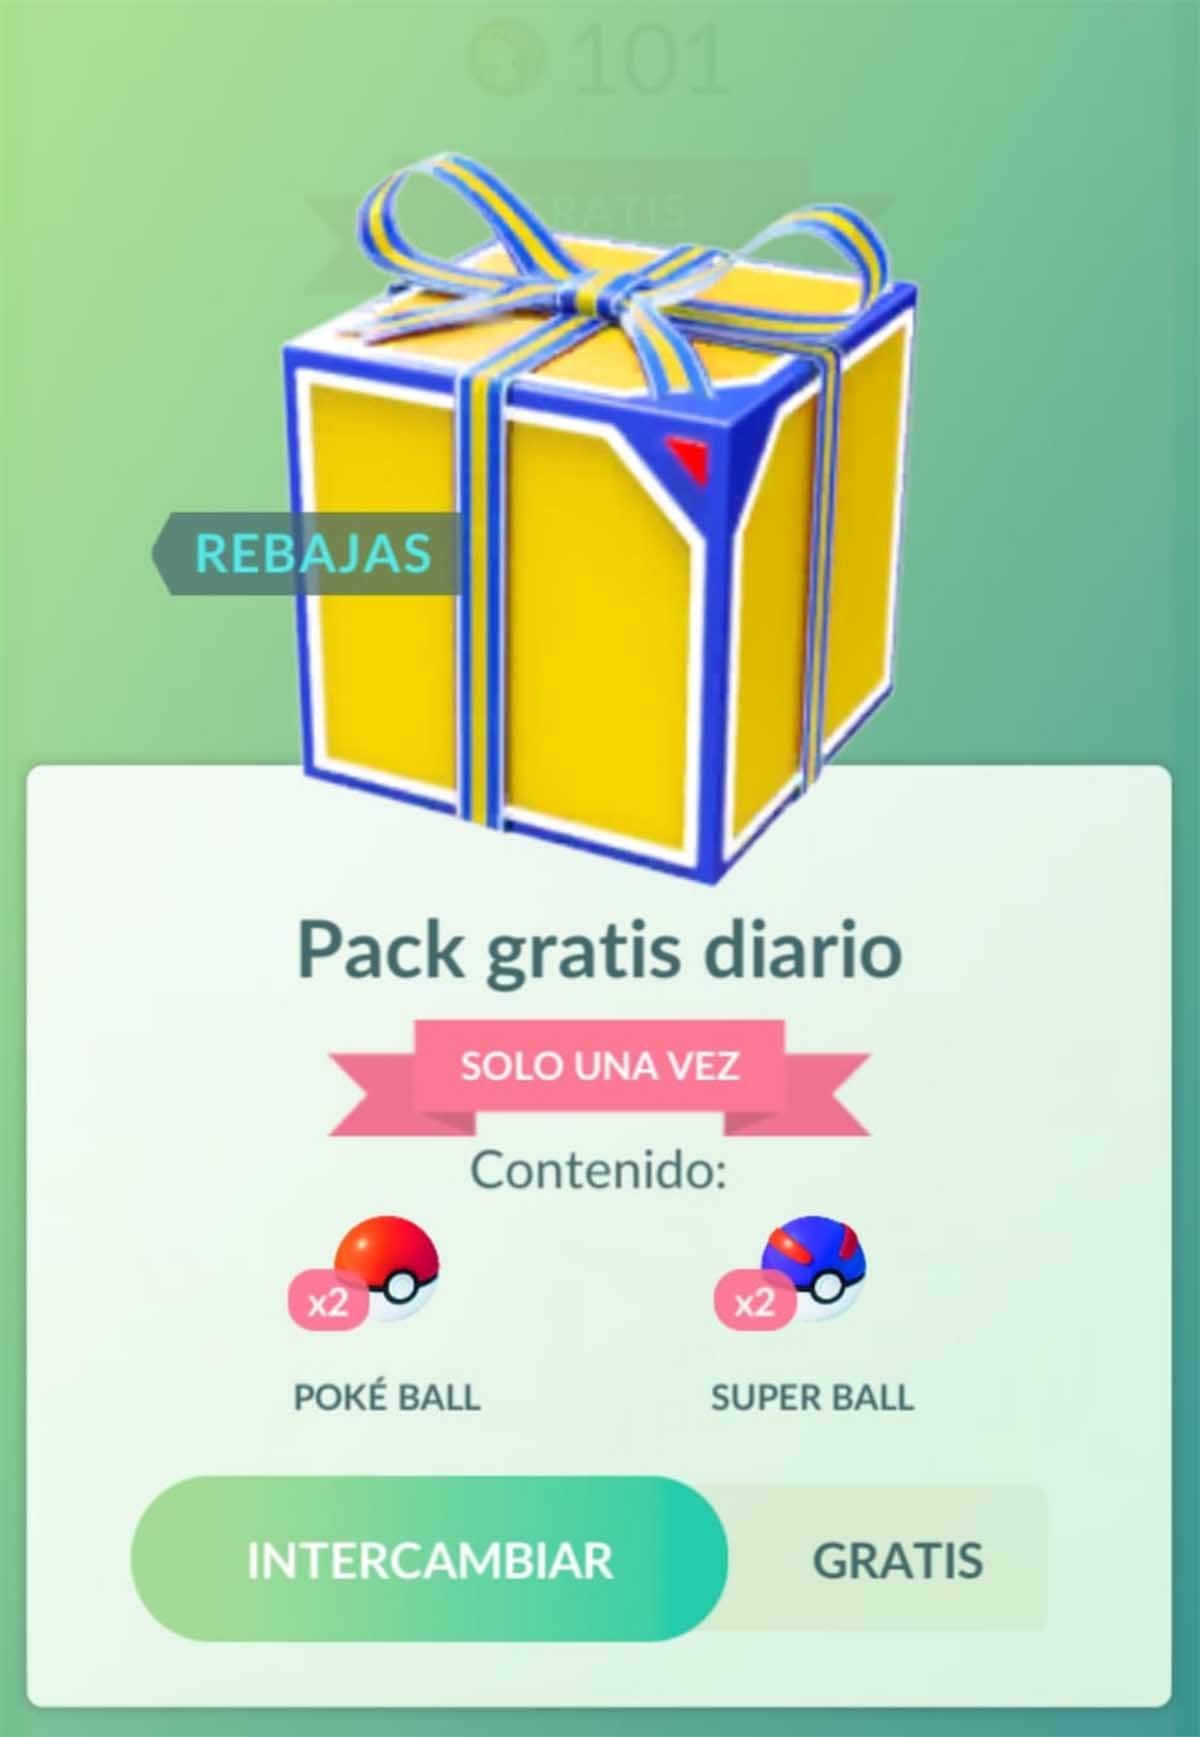 Packs de regalos diarios gratis en Pokémon GO: cómo conseguirlos